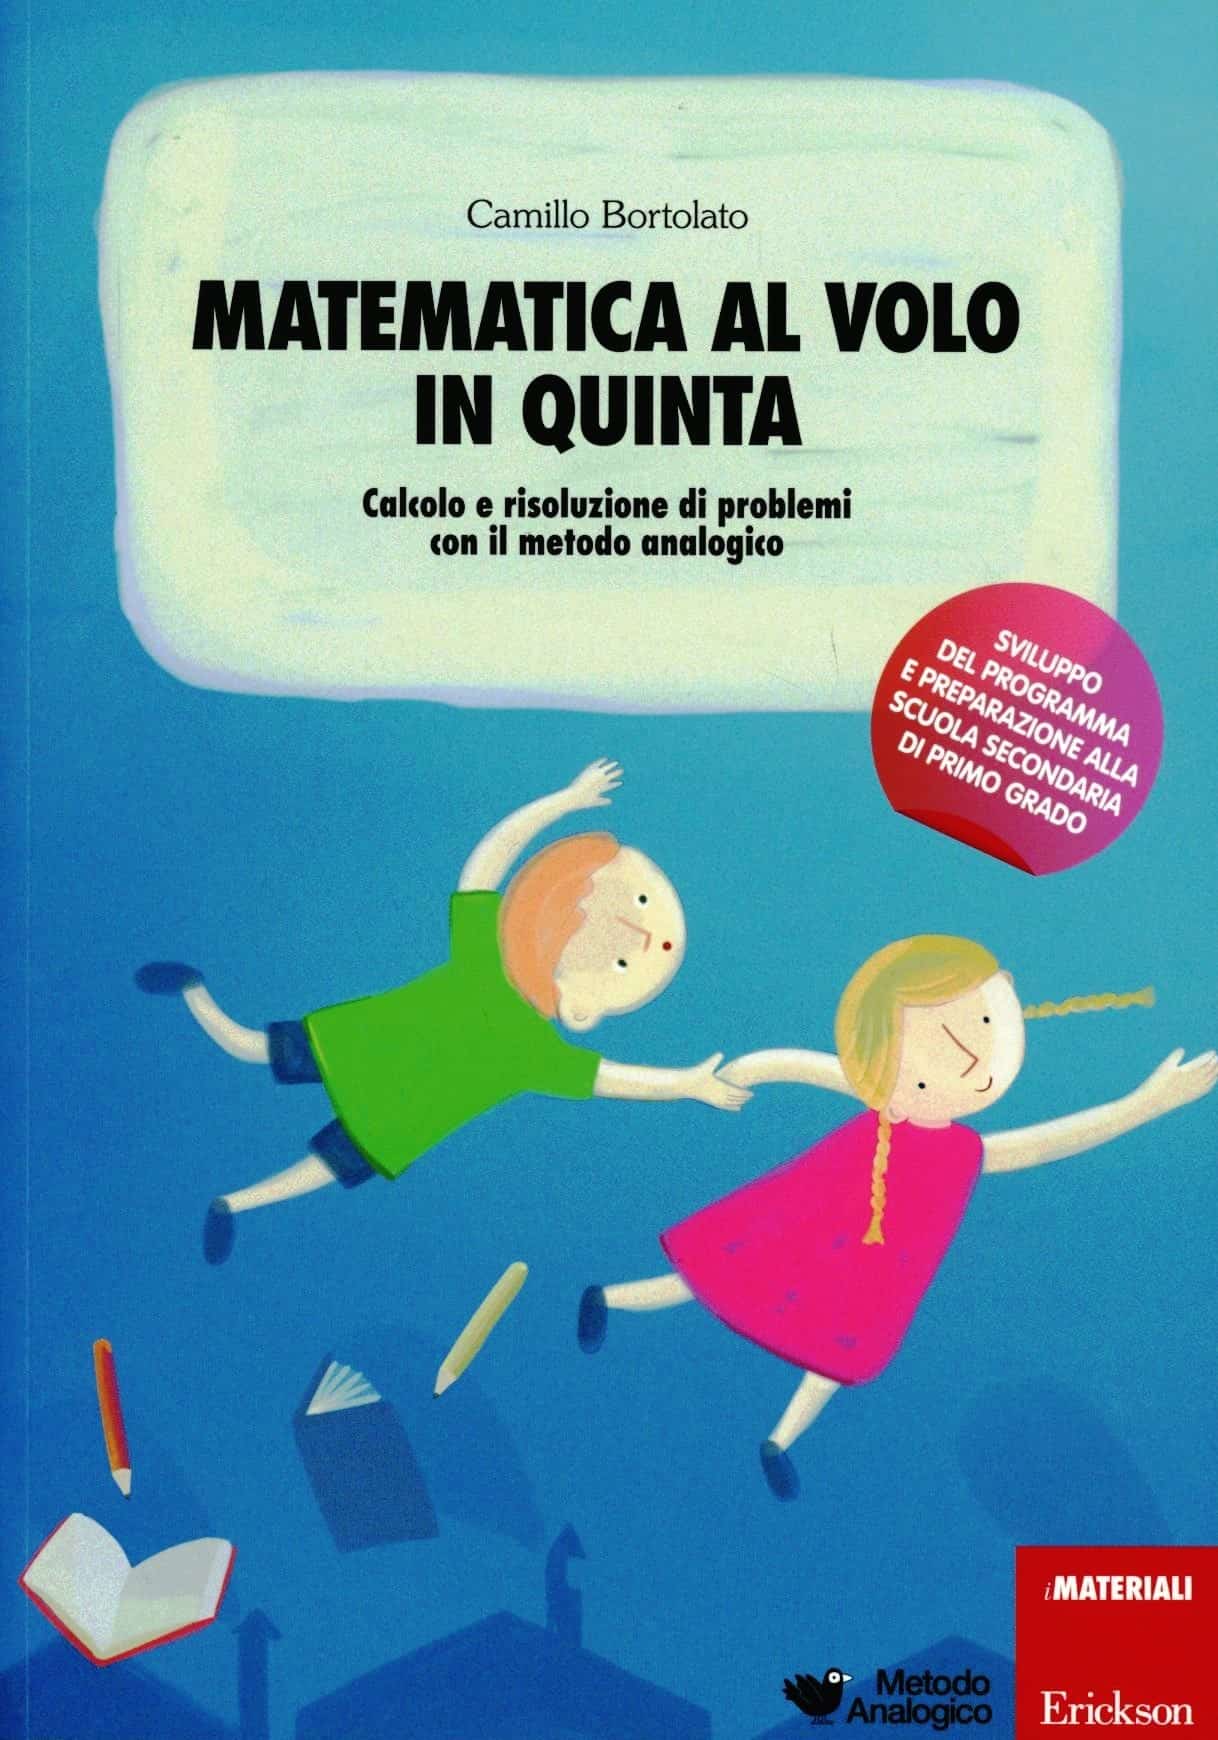 Metodo analogico per l'apprendimento della matematica - Camillo